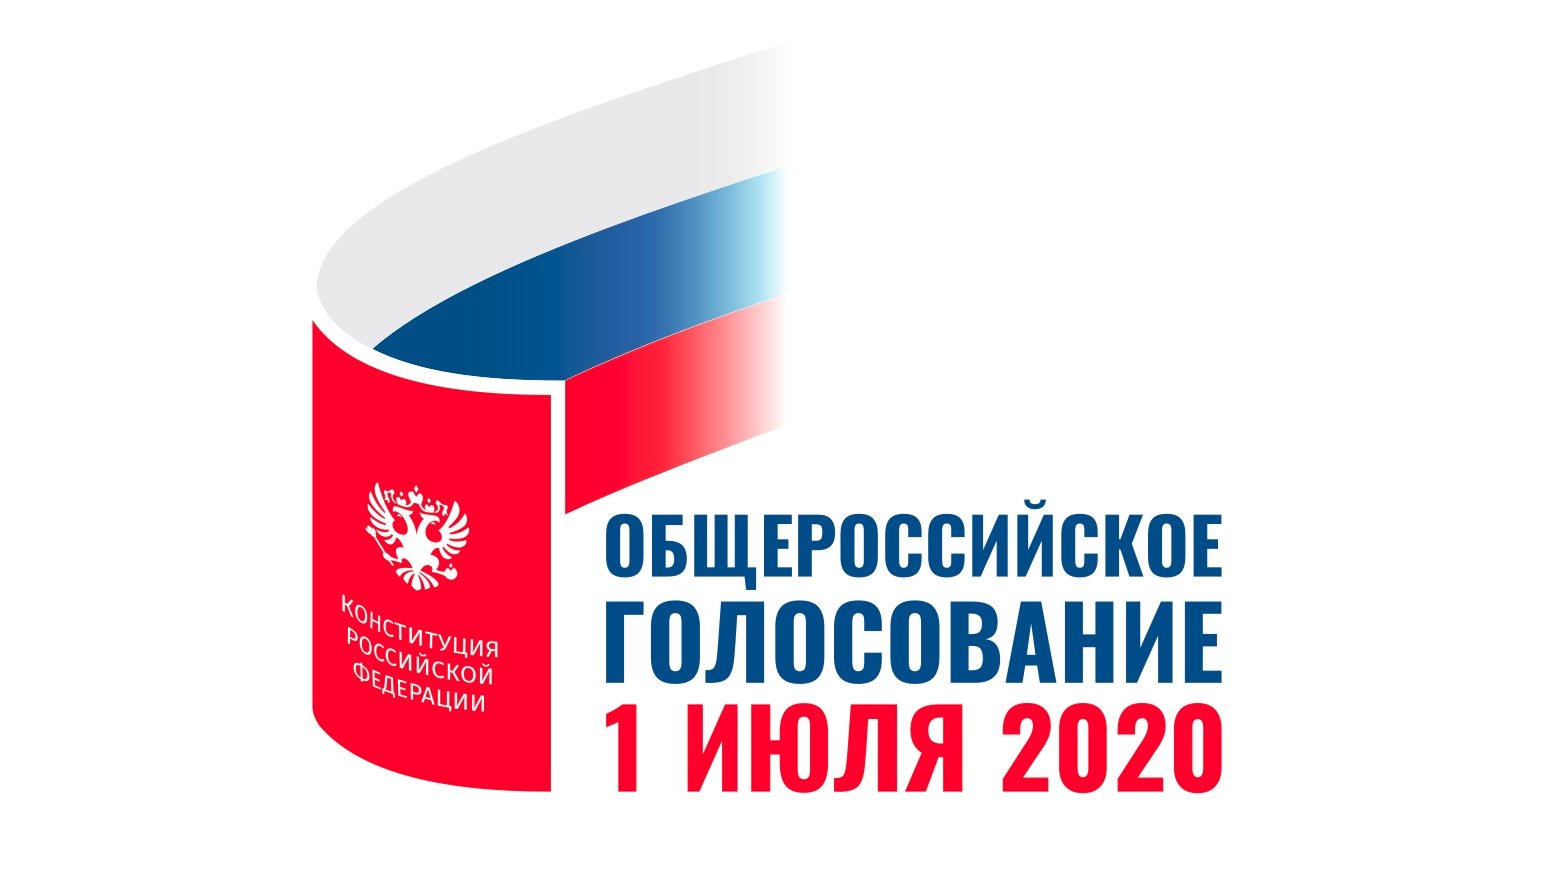 Сегодня основной день общероссийского голосования по поправкам в Конституцию